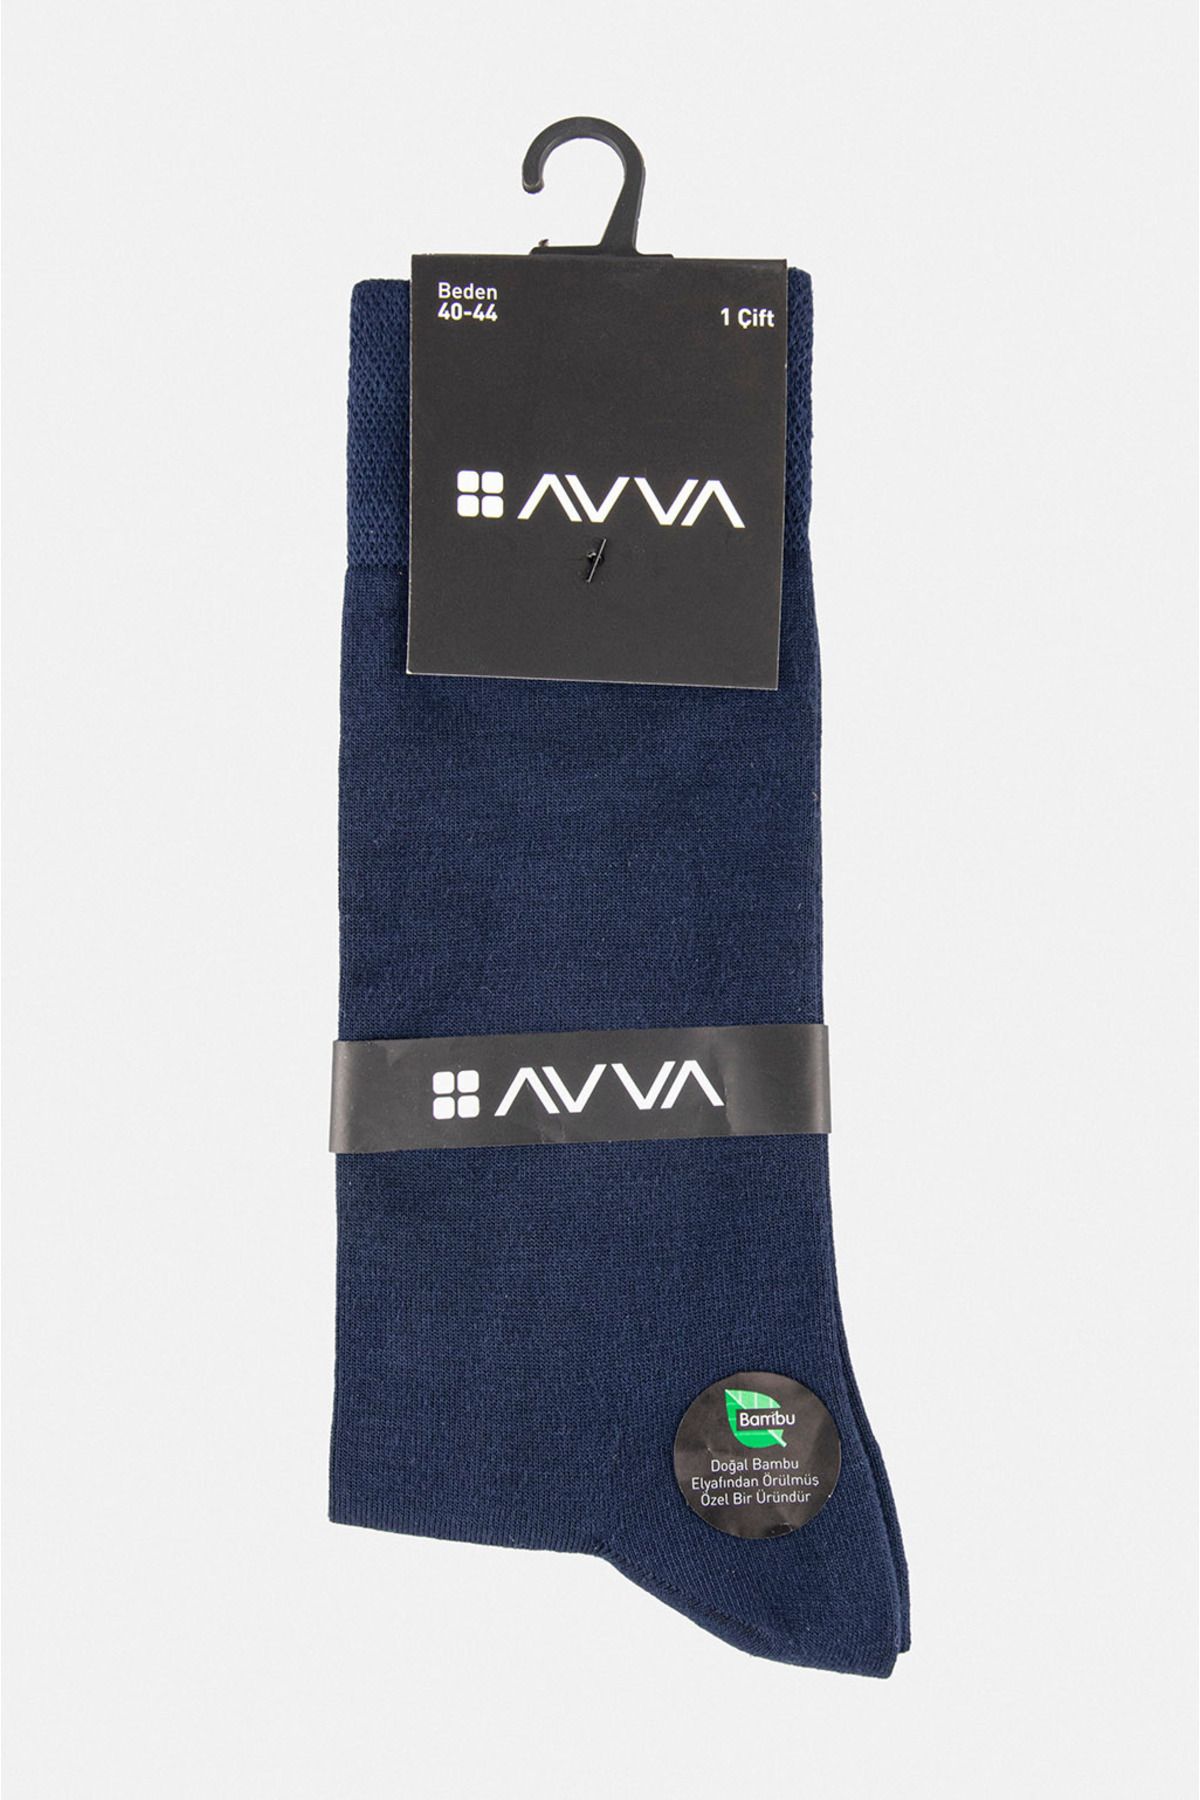 Avva جورابهای سوکت بامبو مسطح آبی مردانه E008501